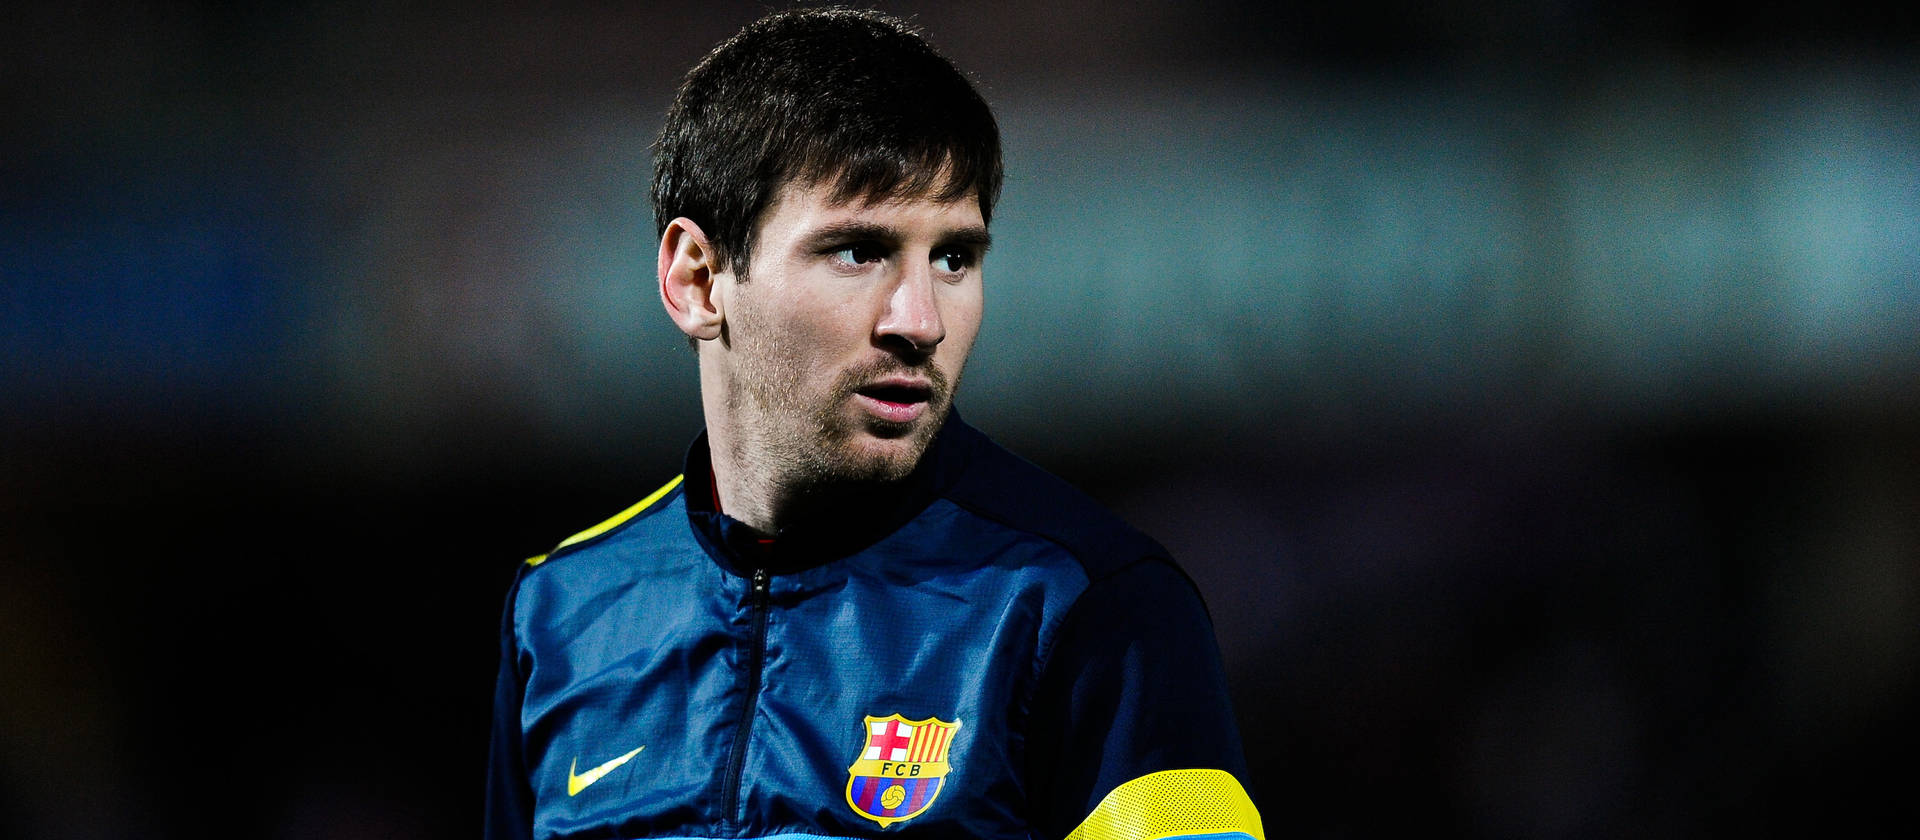 Lionel Messi Dark Blue Jacket Wallpaper